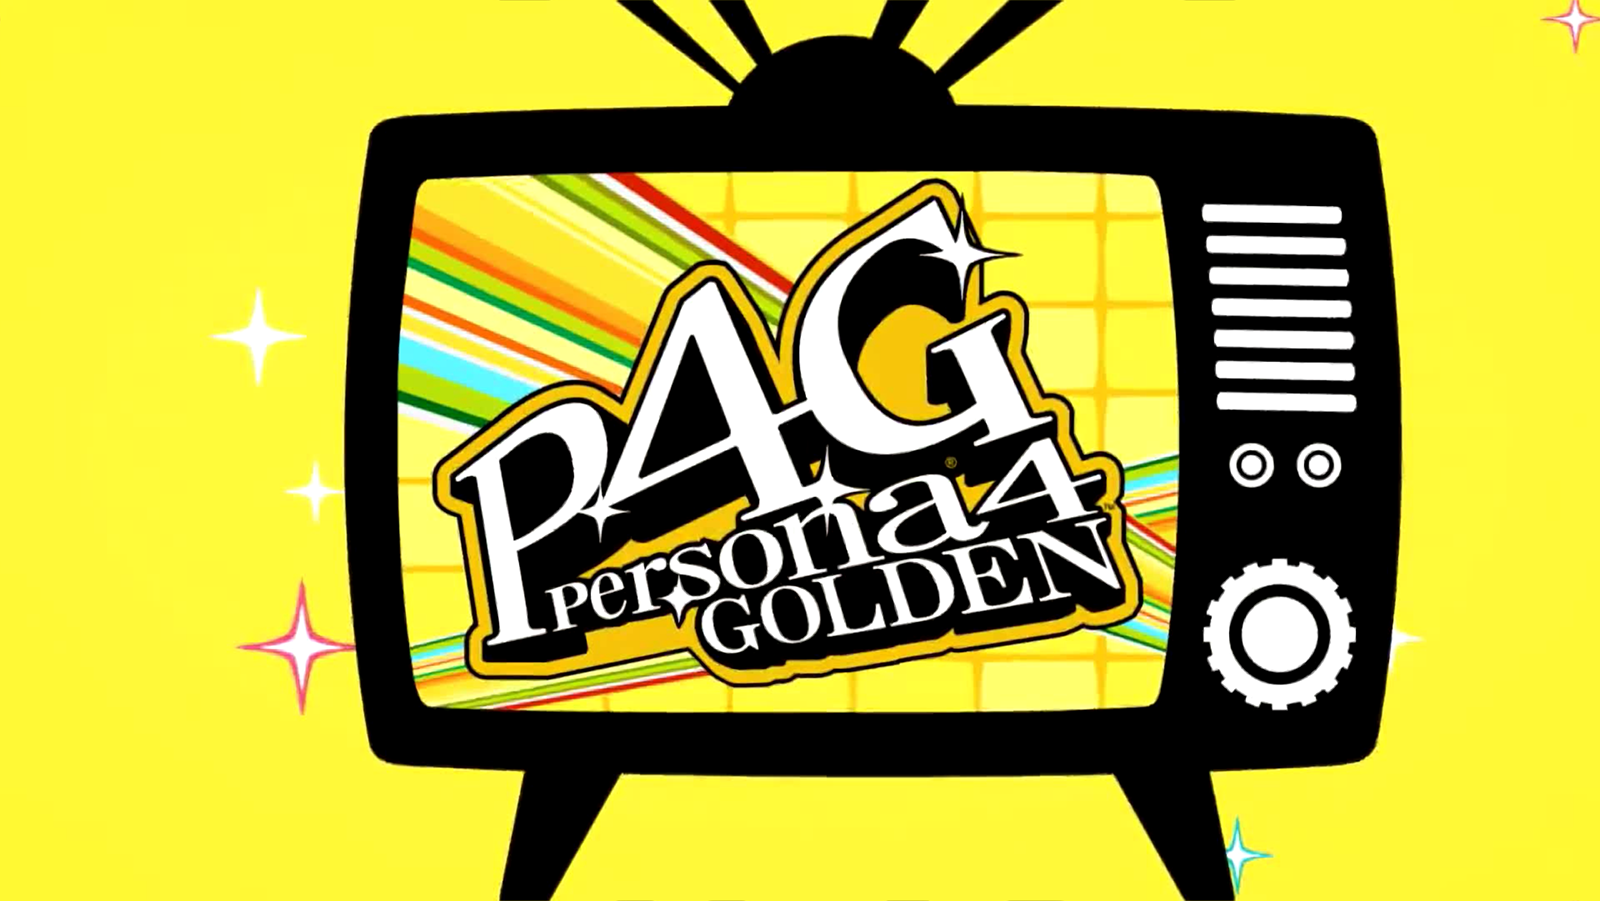 Gold tv. Persona 4 Golden. Persona 4 Golden PC 2020. Persona 4 Golden logo. Persona 4 Golden (PC).